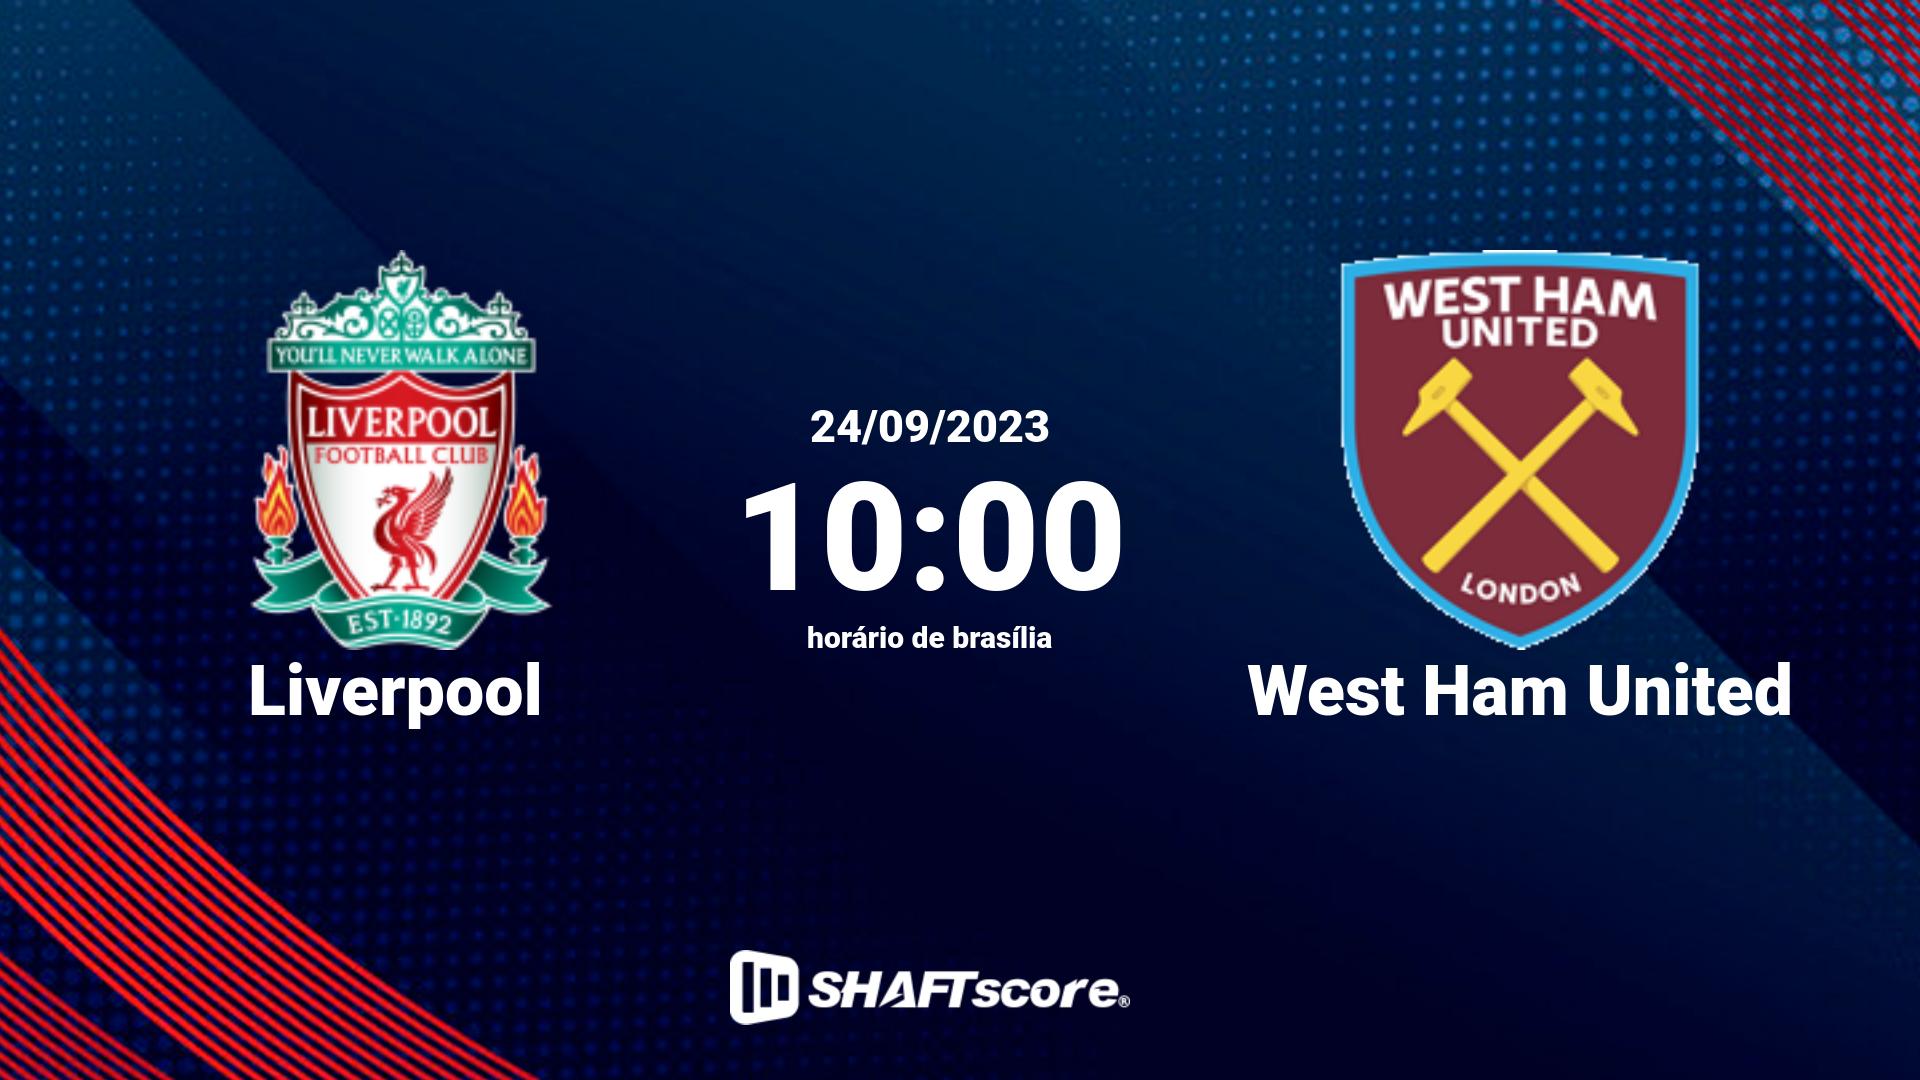 Estatísticas do jogo Liverpool vs West Ham United 24.09 10:00